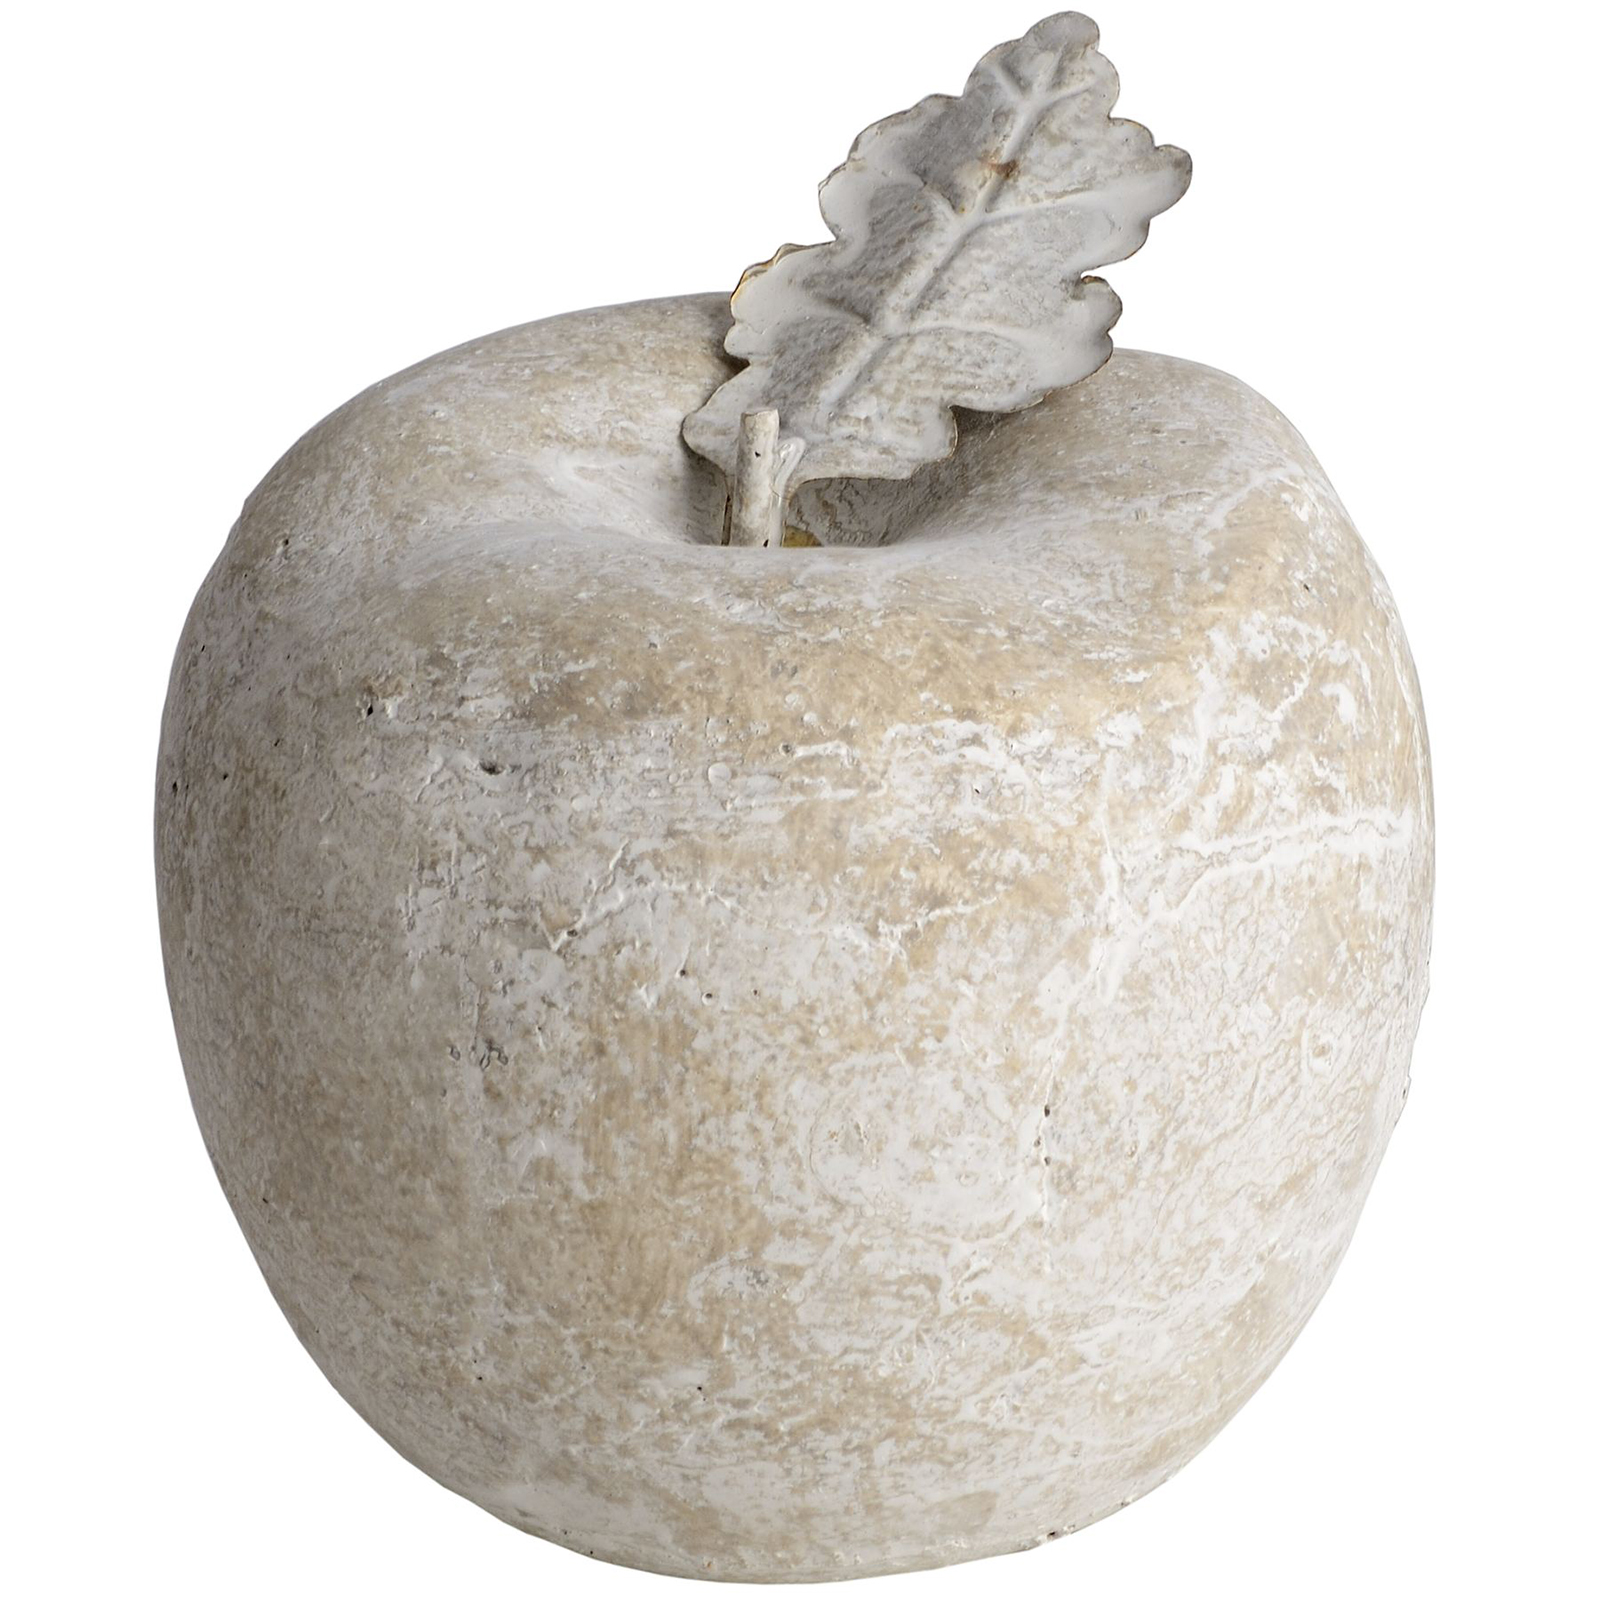 Stone Apple (Medium) - Image 1